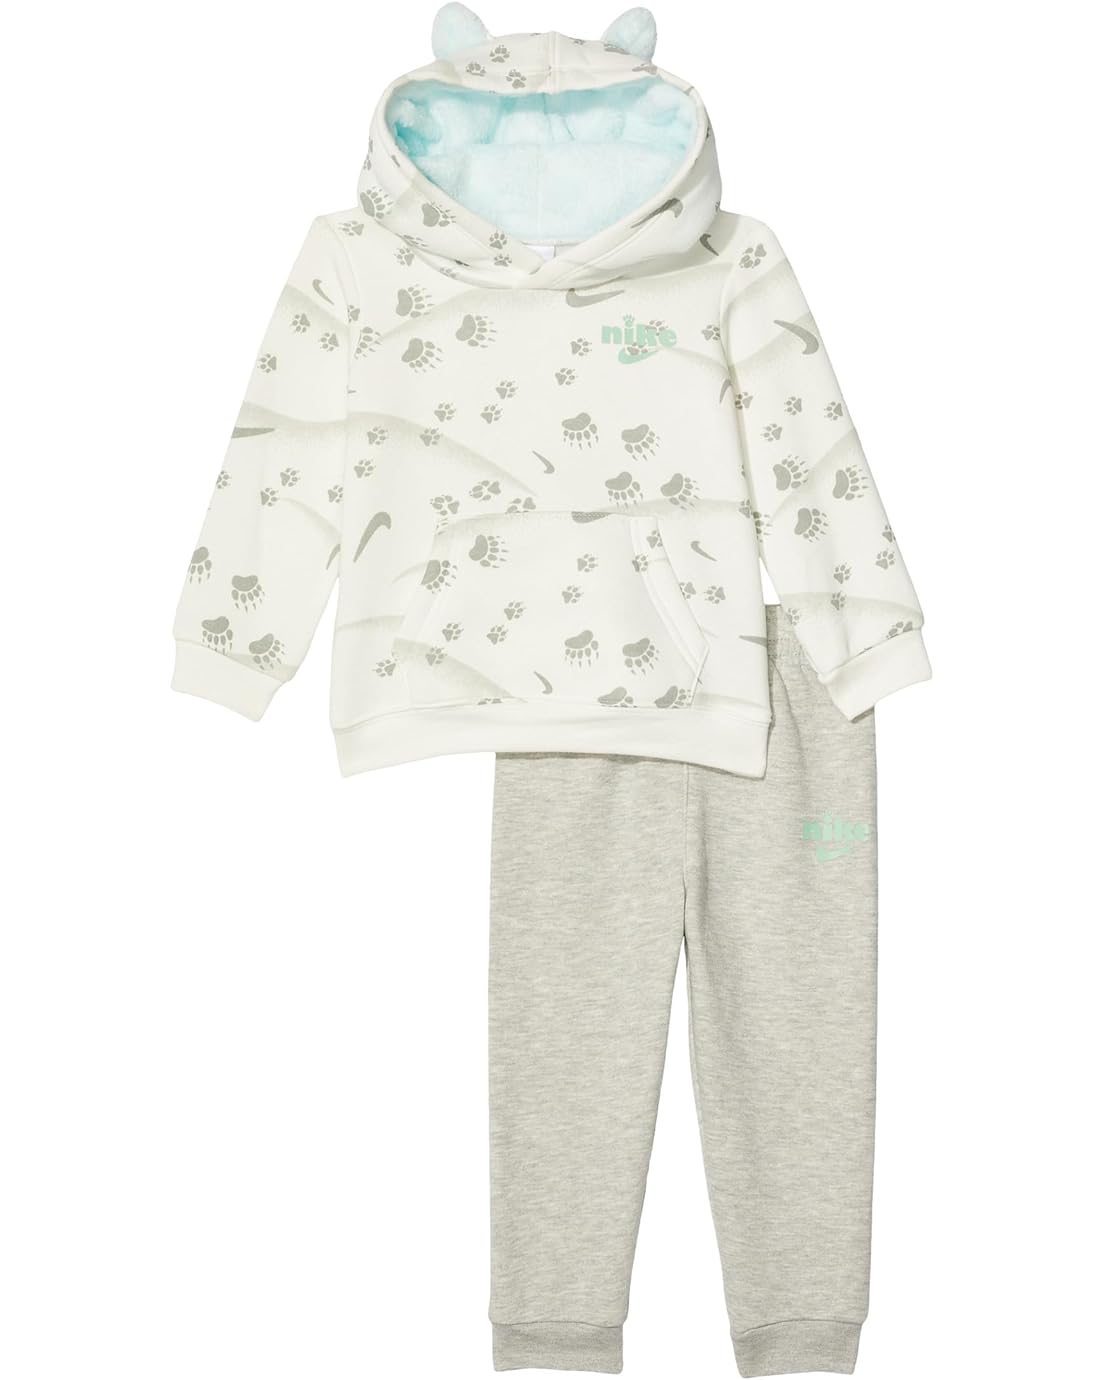 Nike Kids Track Pack Fleece Pullover Set (Infant)